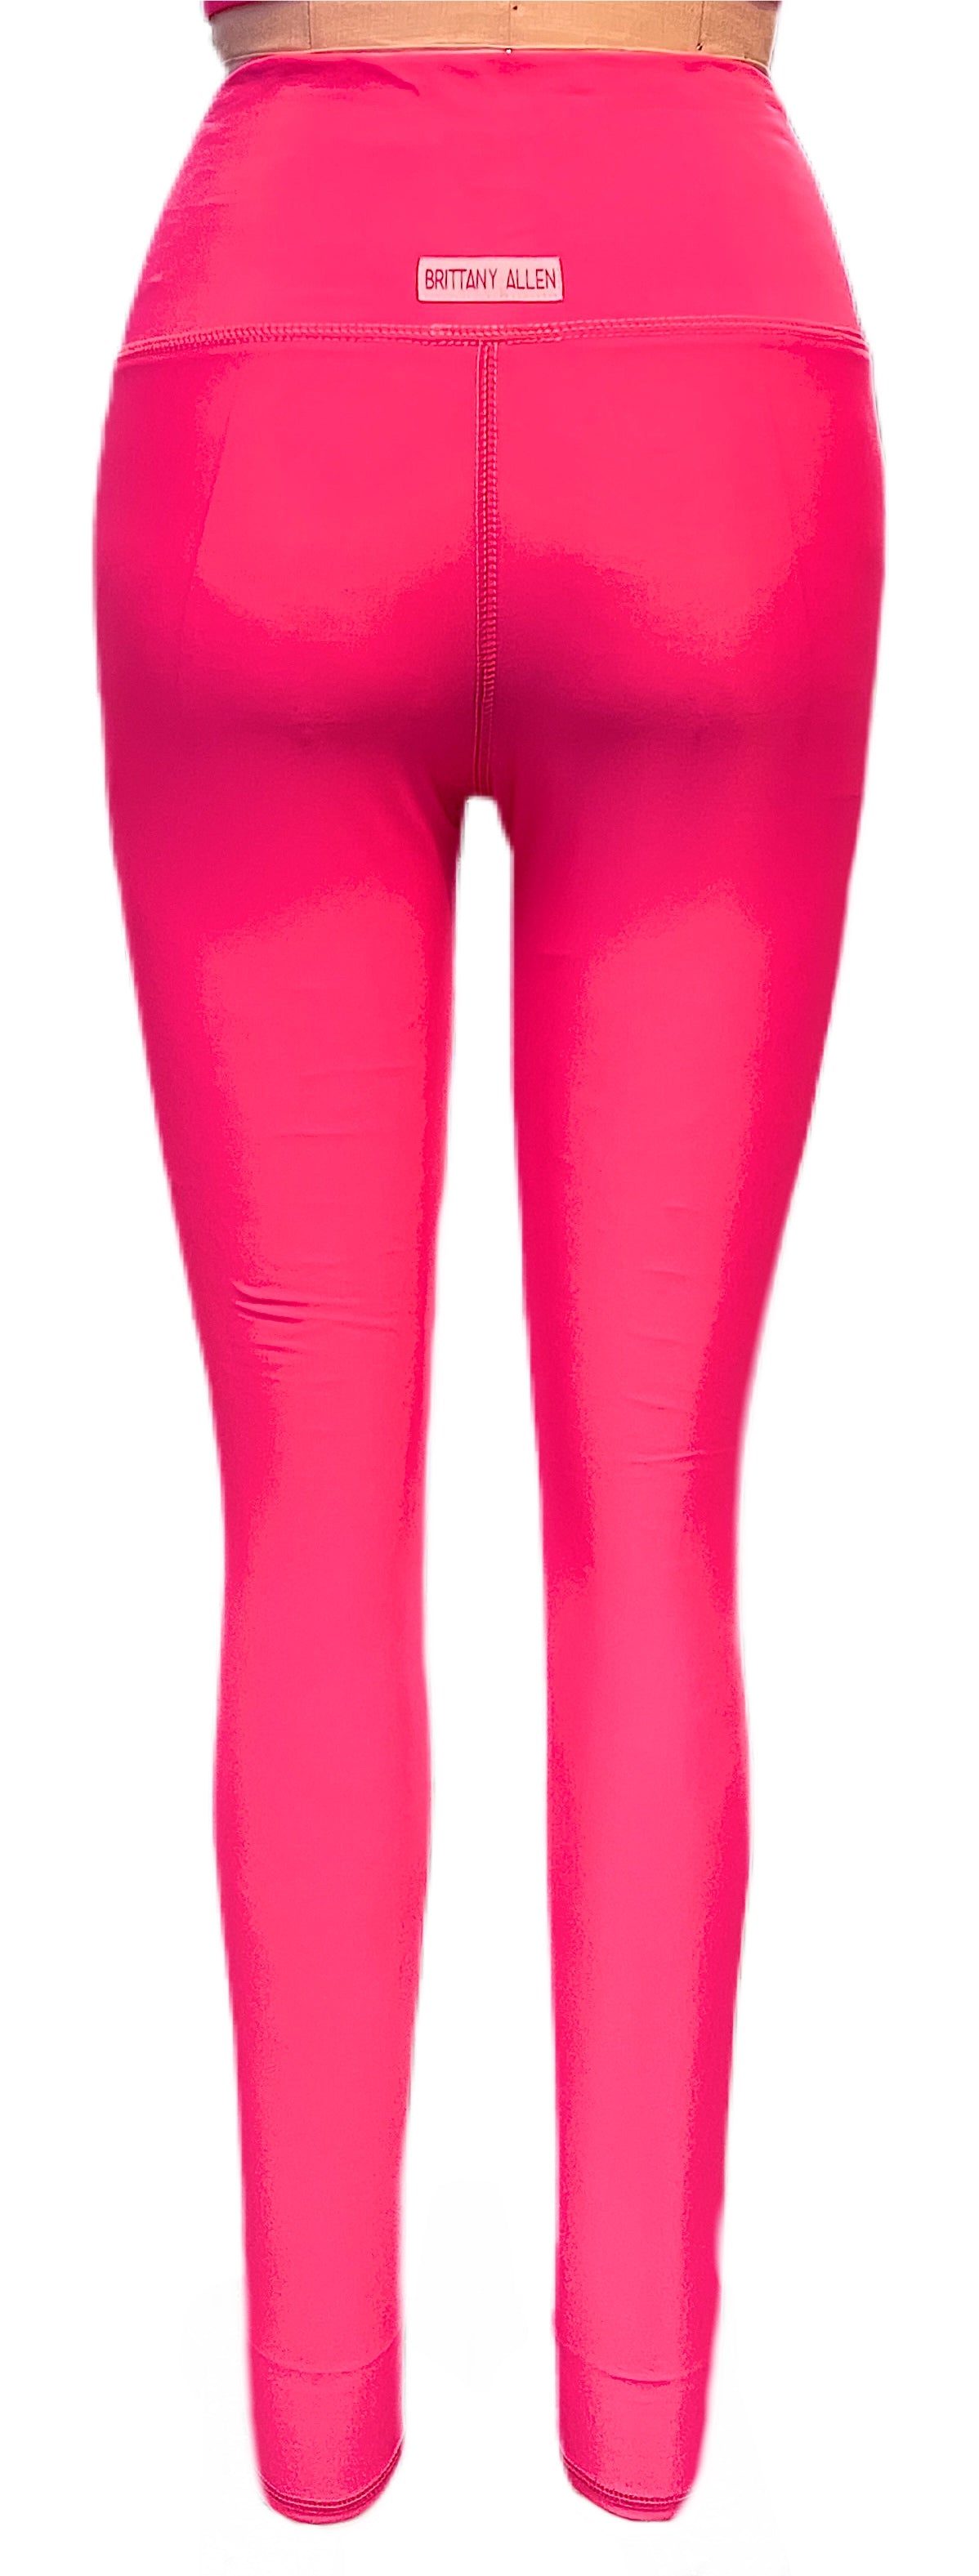 ROCHY Estampado Pink Abstract Girls Leggings Set - 23863